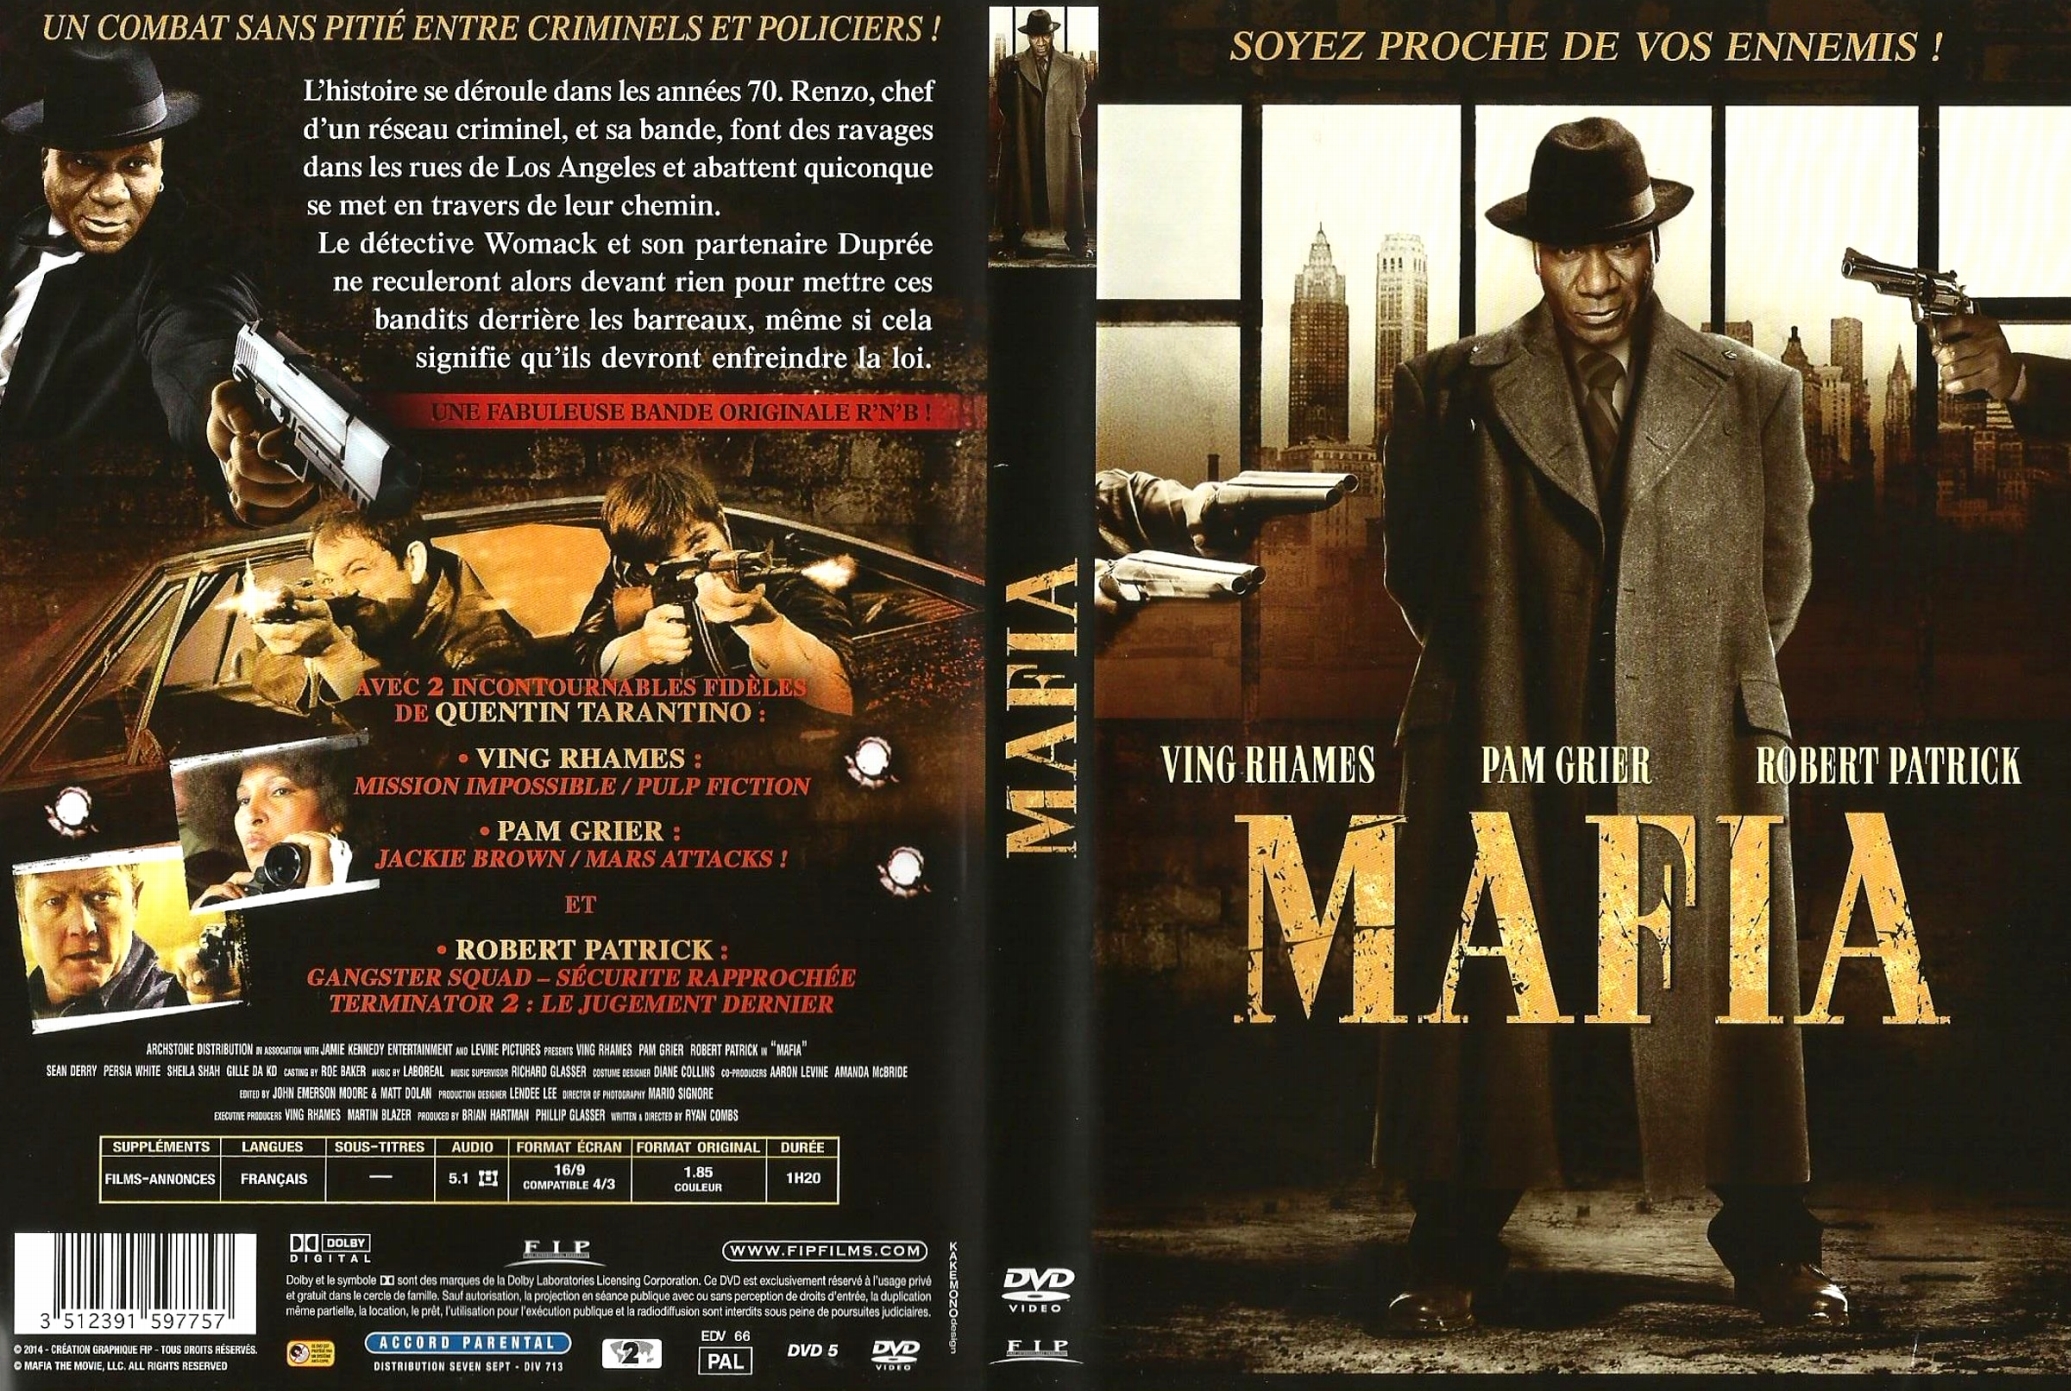 Jaquette DVD Mafia